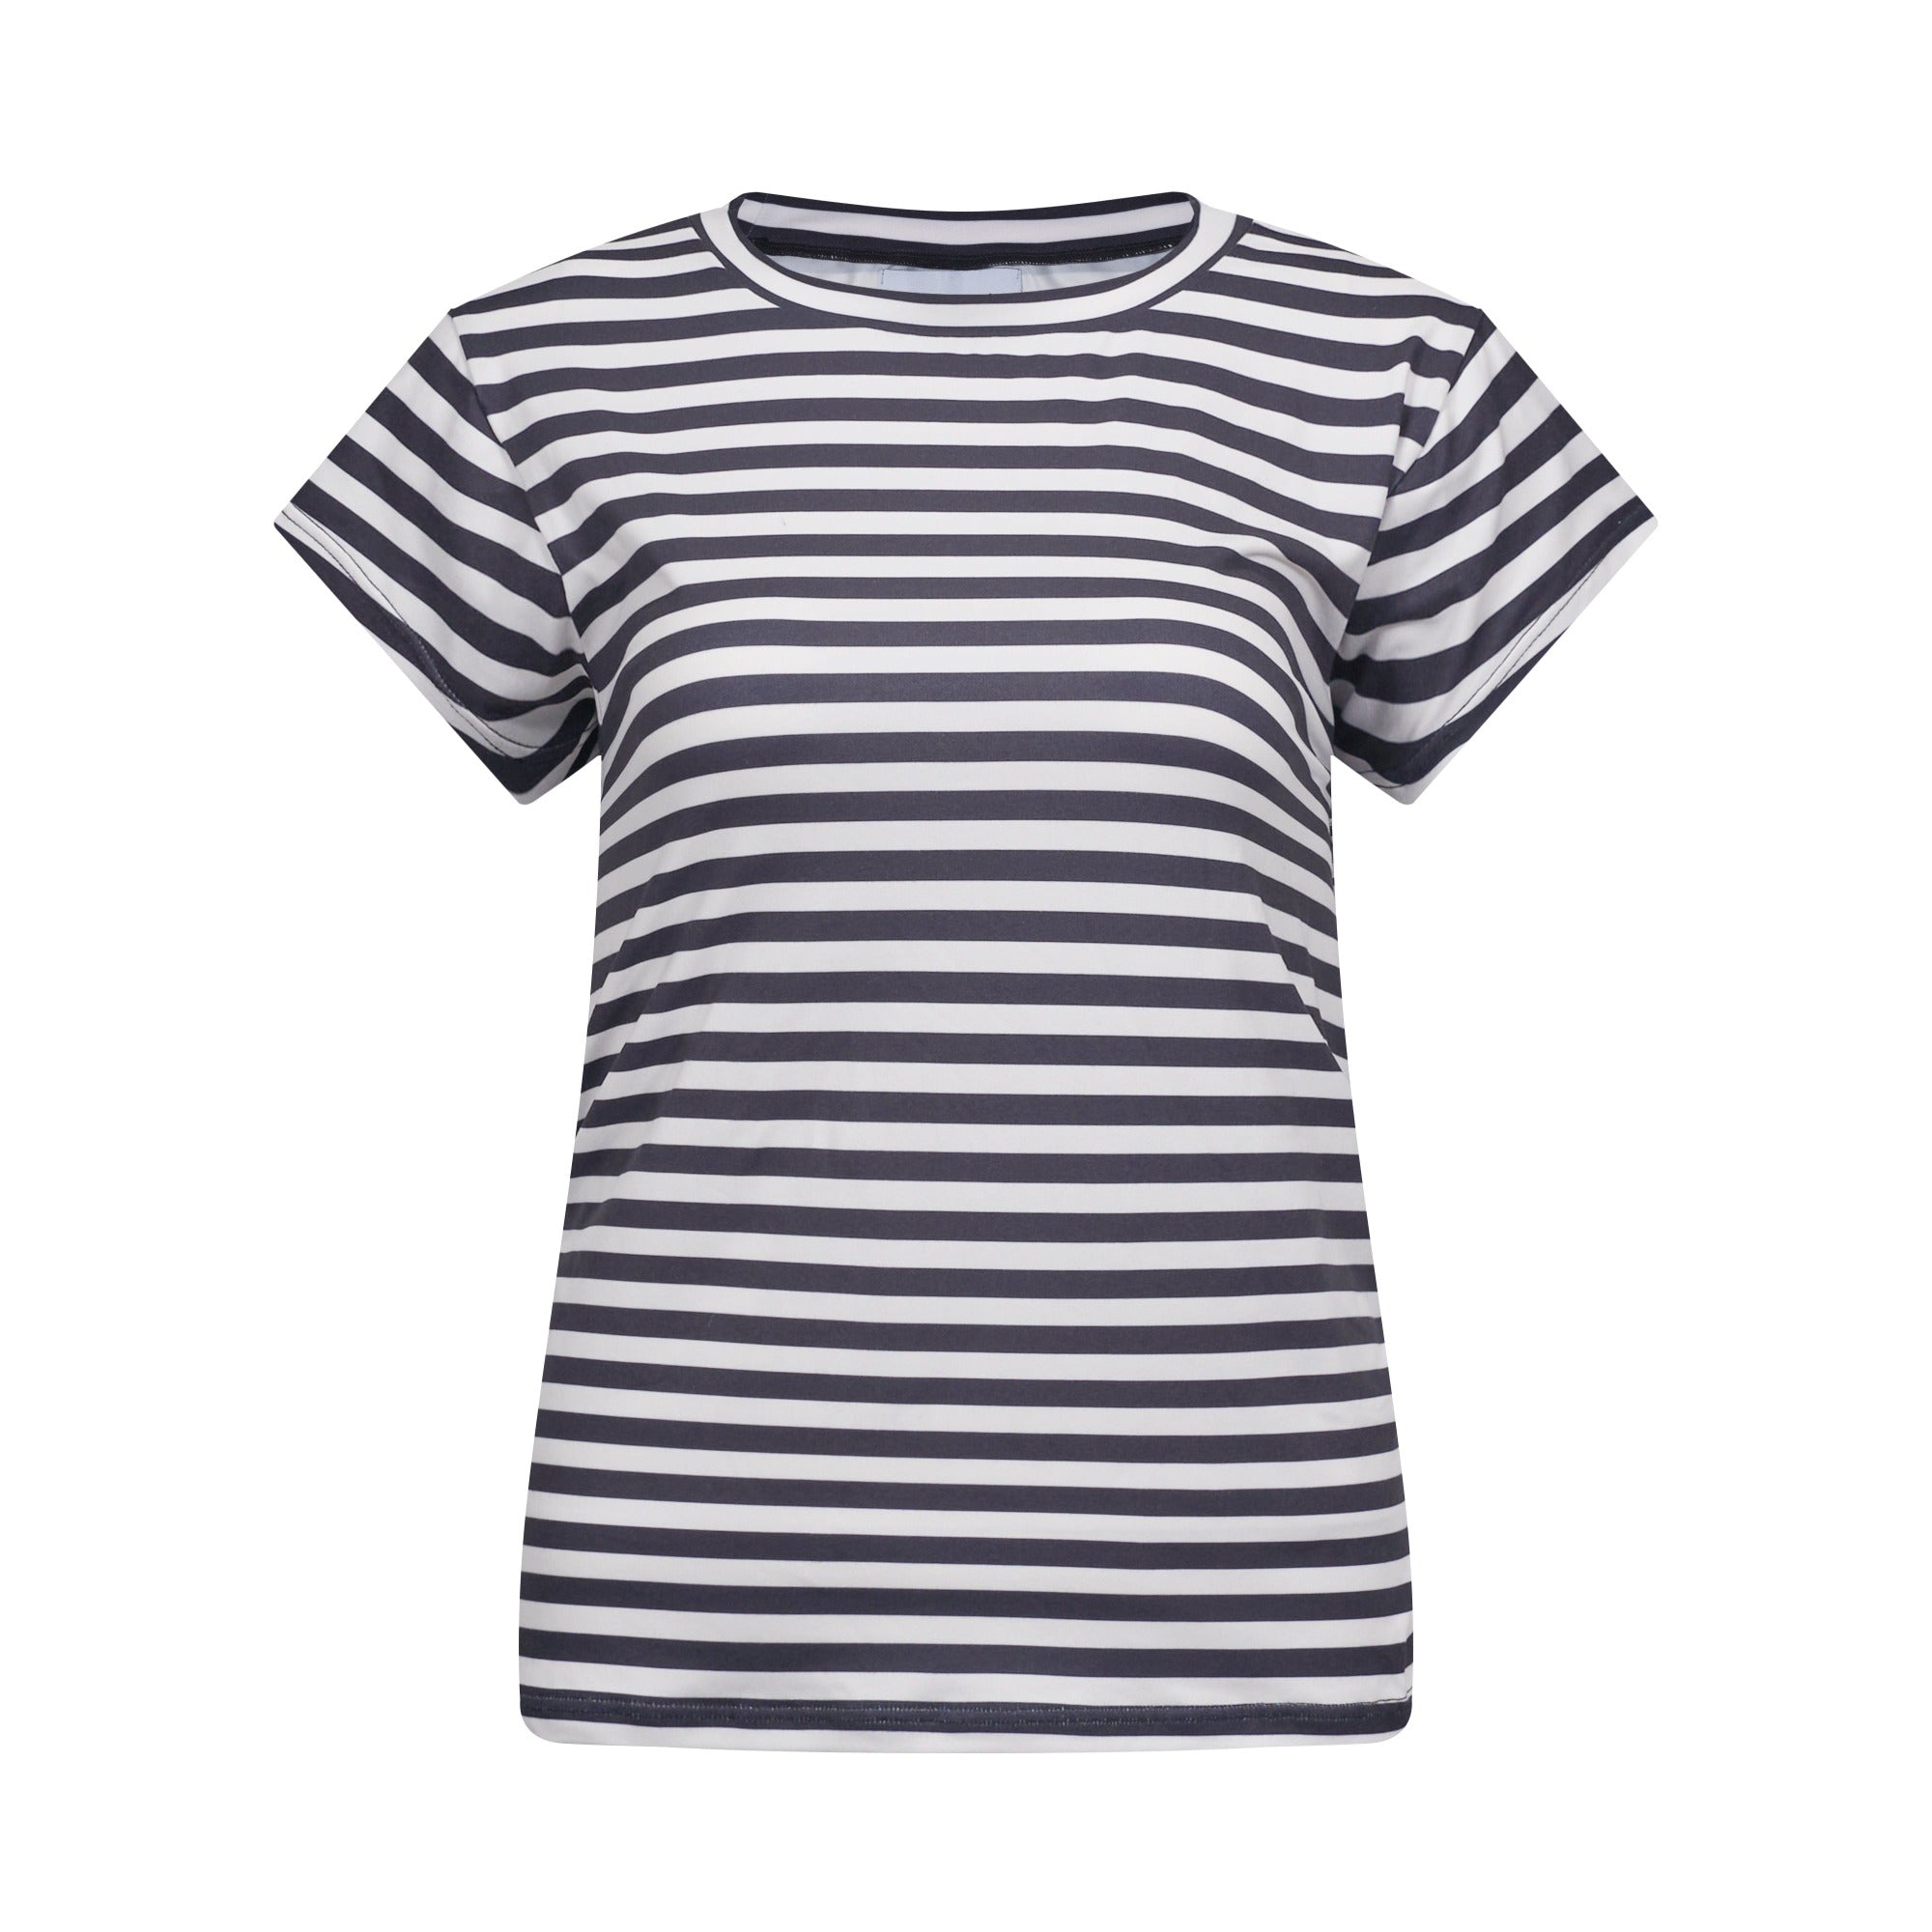 Liberté - Alma U T-shirt SS, 9581 - Black Creme Stripe